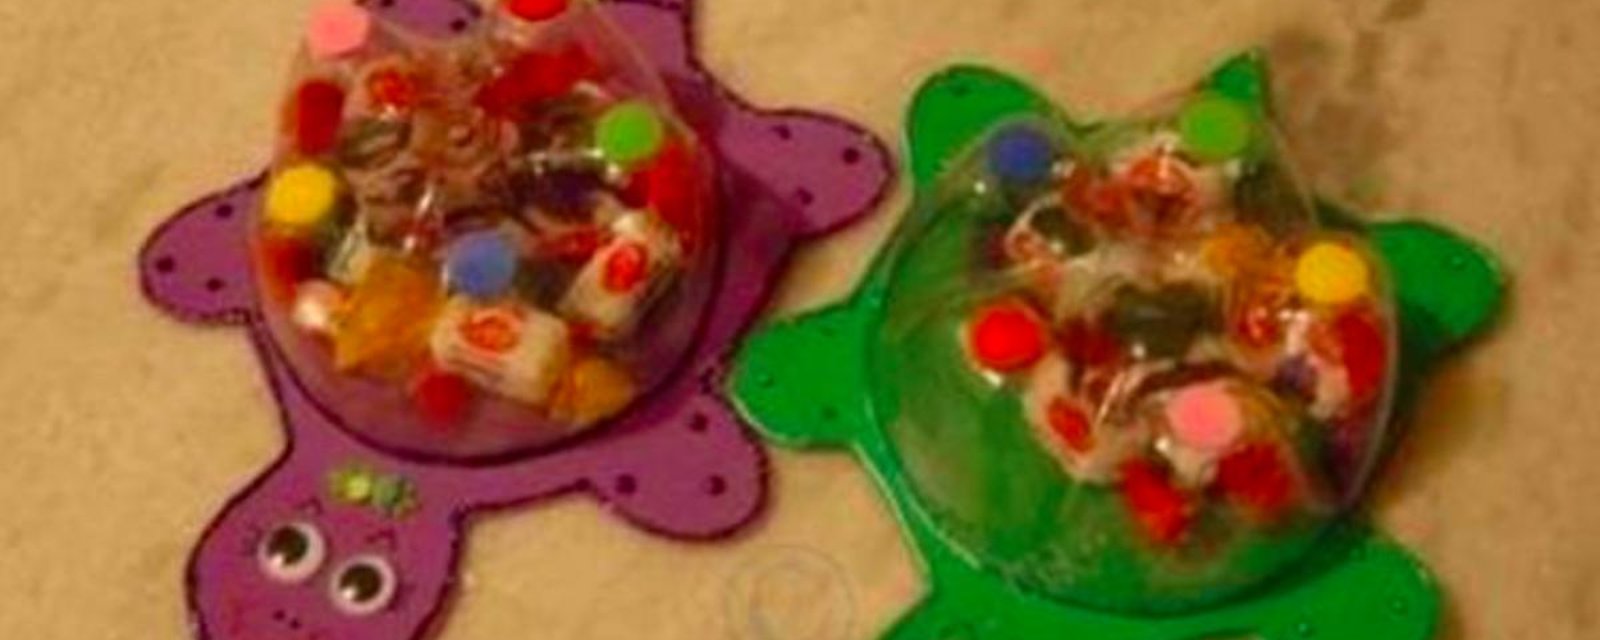 Apprenez à fabriquer de jolies tortues pour offrir des surprises aux petits invités d'une fête d'enfant